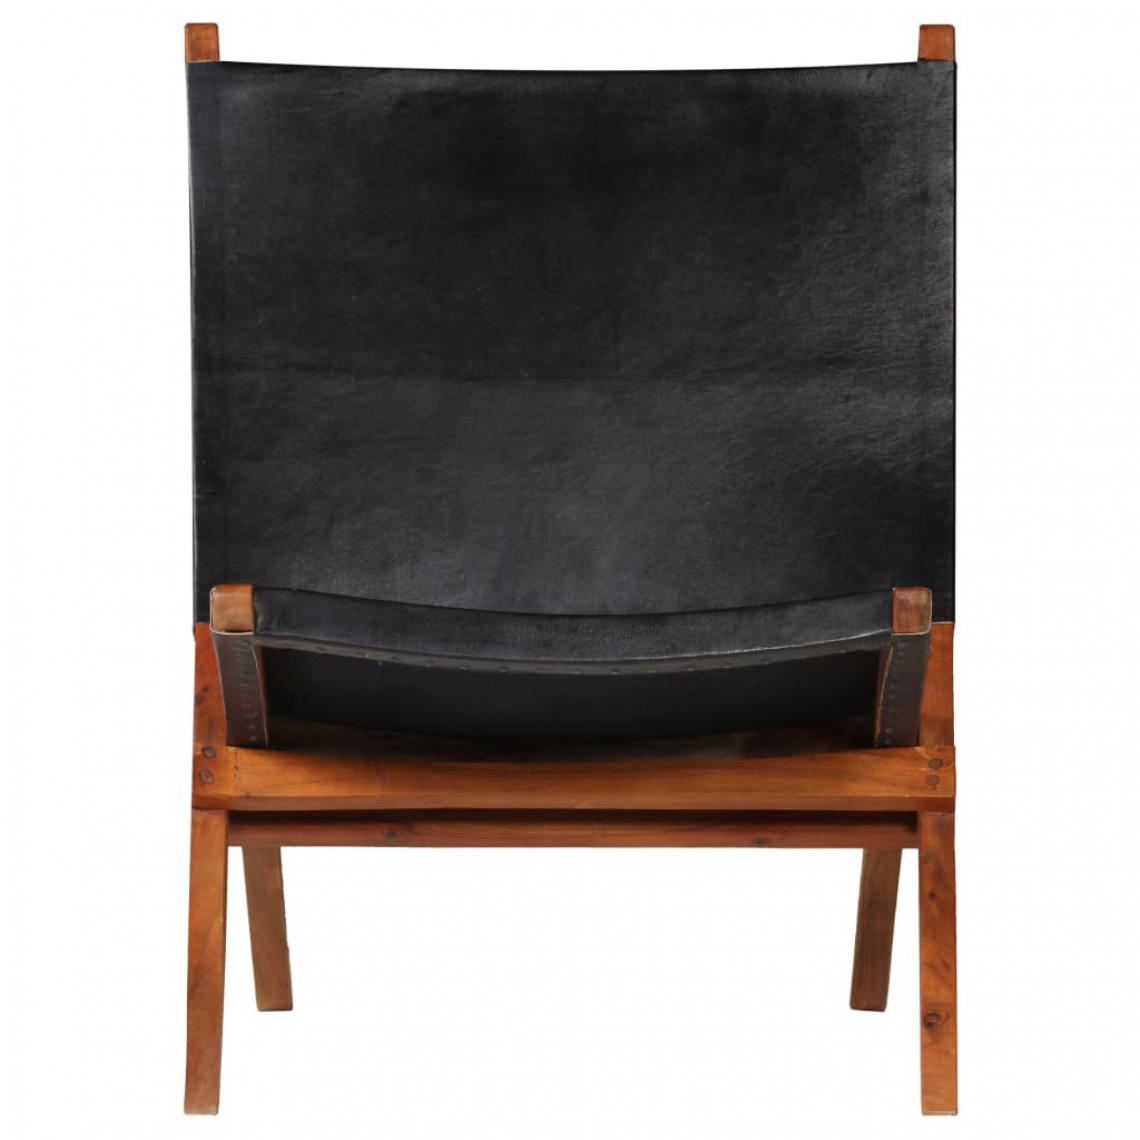 Icaverne - Icaverne - Chaises pliantes et tabourets pliants categorie Chaise de relaxation Cuir véritable 59 x 72 x 79 cm Noir - Chaises